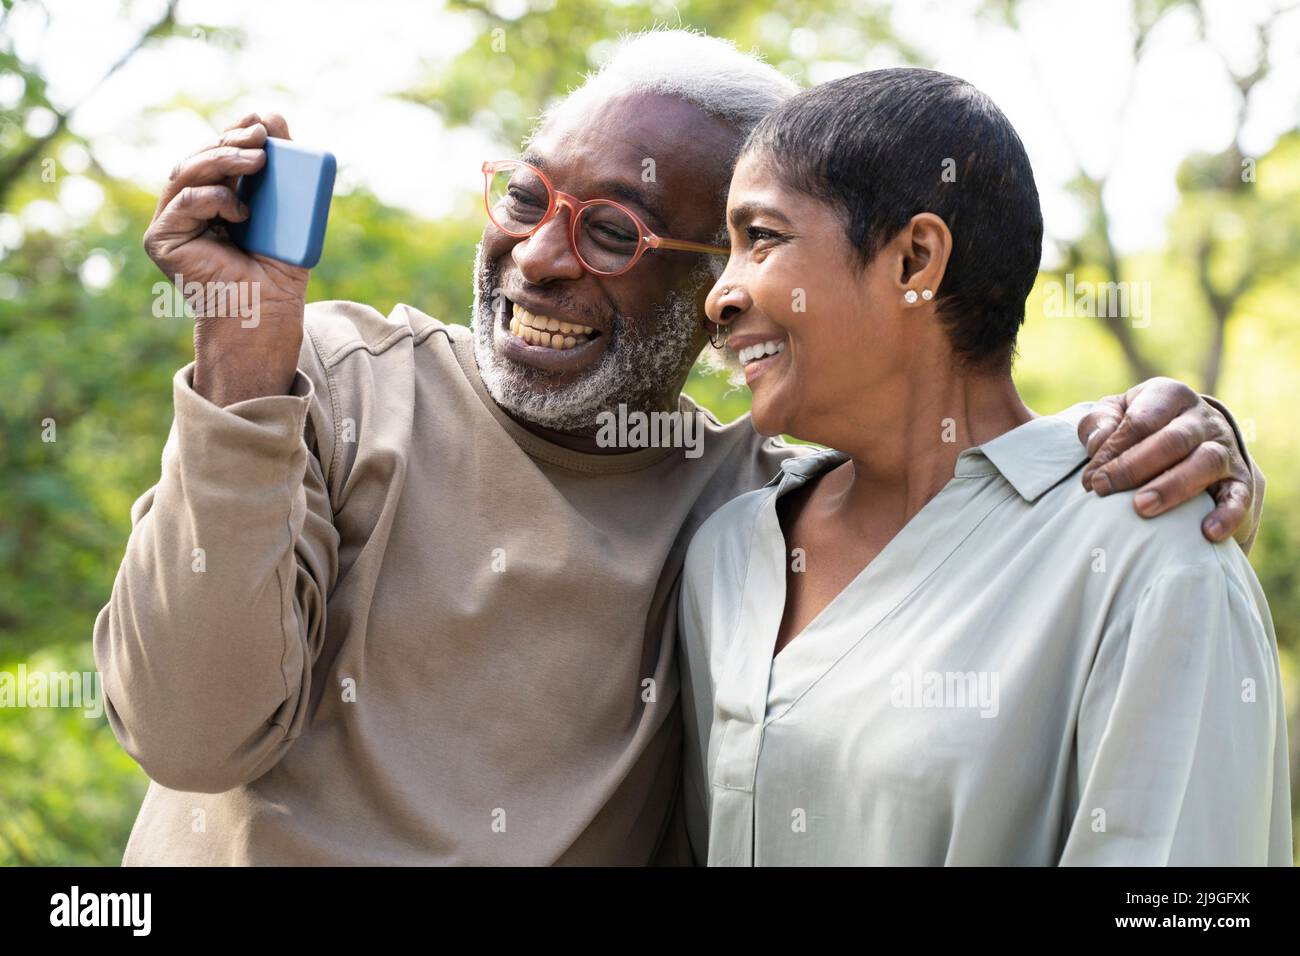 Lächelndes Paar, das Selfie mit dem Smartphone gemacht hat Stockfoto